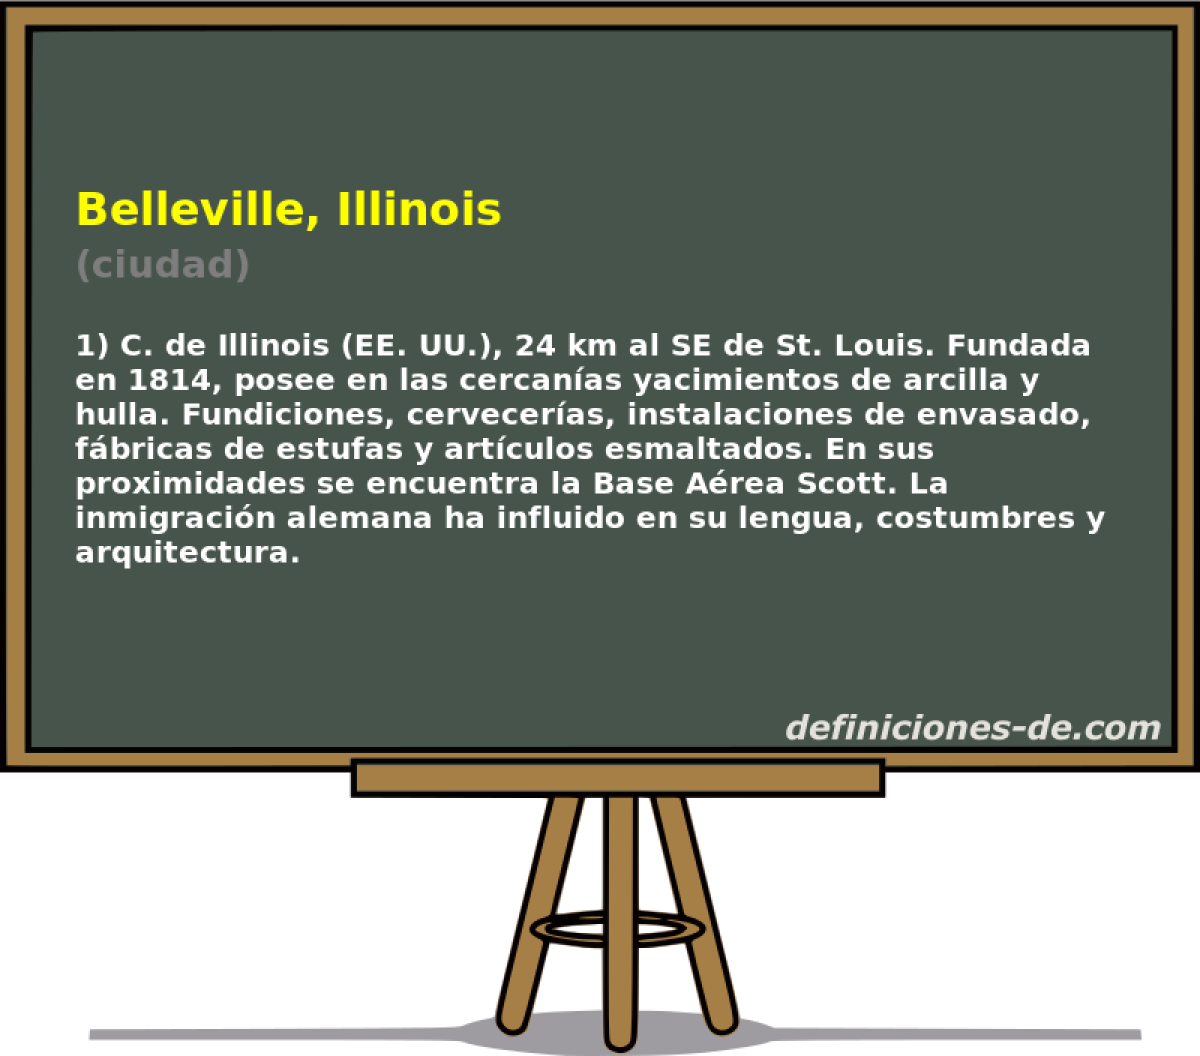 Belleville, Illinois (ciudad)